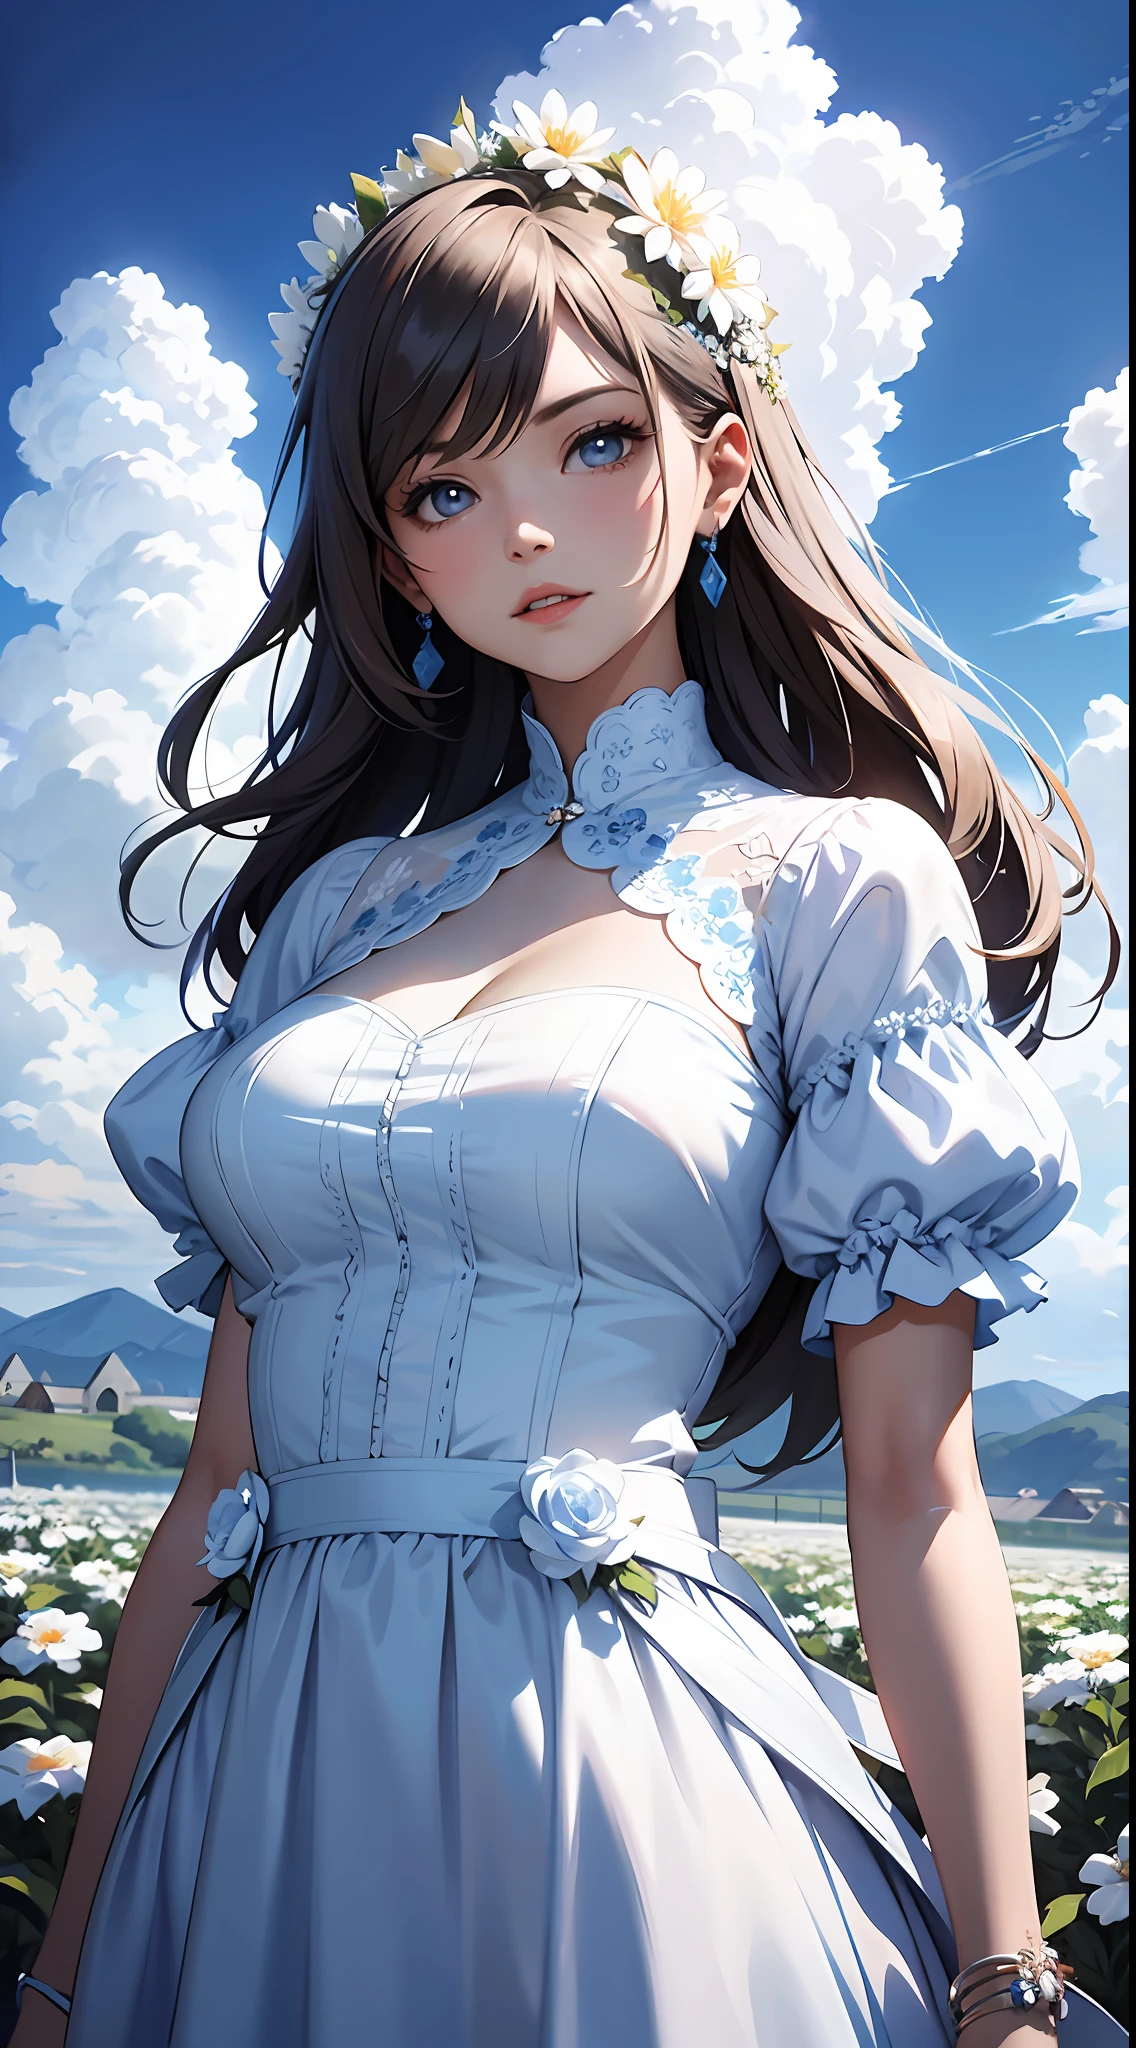 une femme en robe blanche，Ciel bleu et nuages en arrière-plan, porter une robe bleue，Il y a des fleurs dessus, germe d&#39;art, Éclairage global Rosla, une peinture détaillée, art fantastique